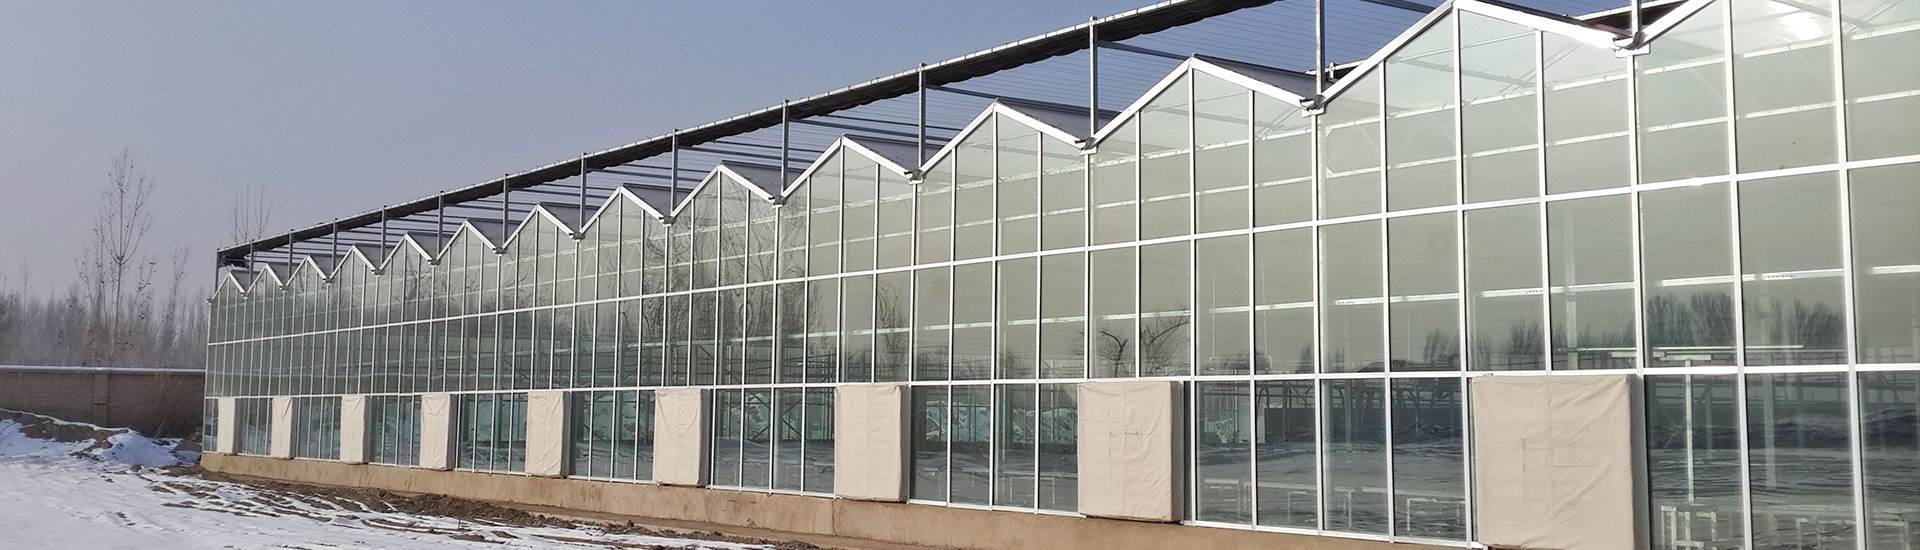 四周玻璃顶部阳光板温室的图片山东潍坊建达温室材料公司